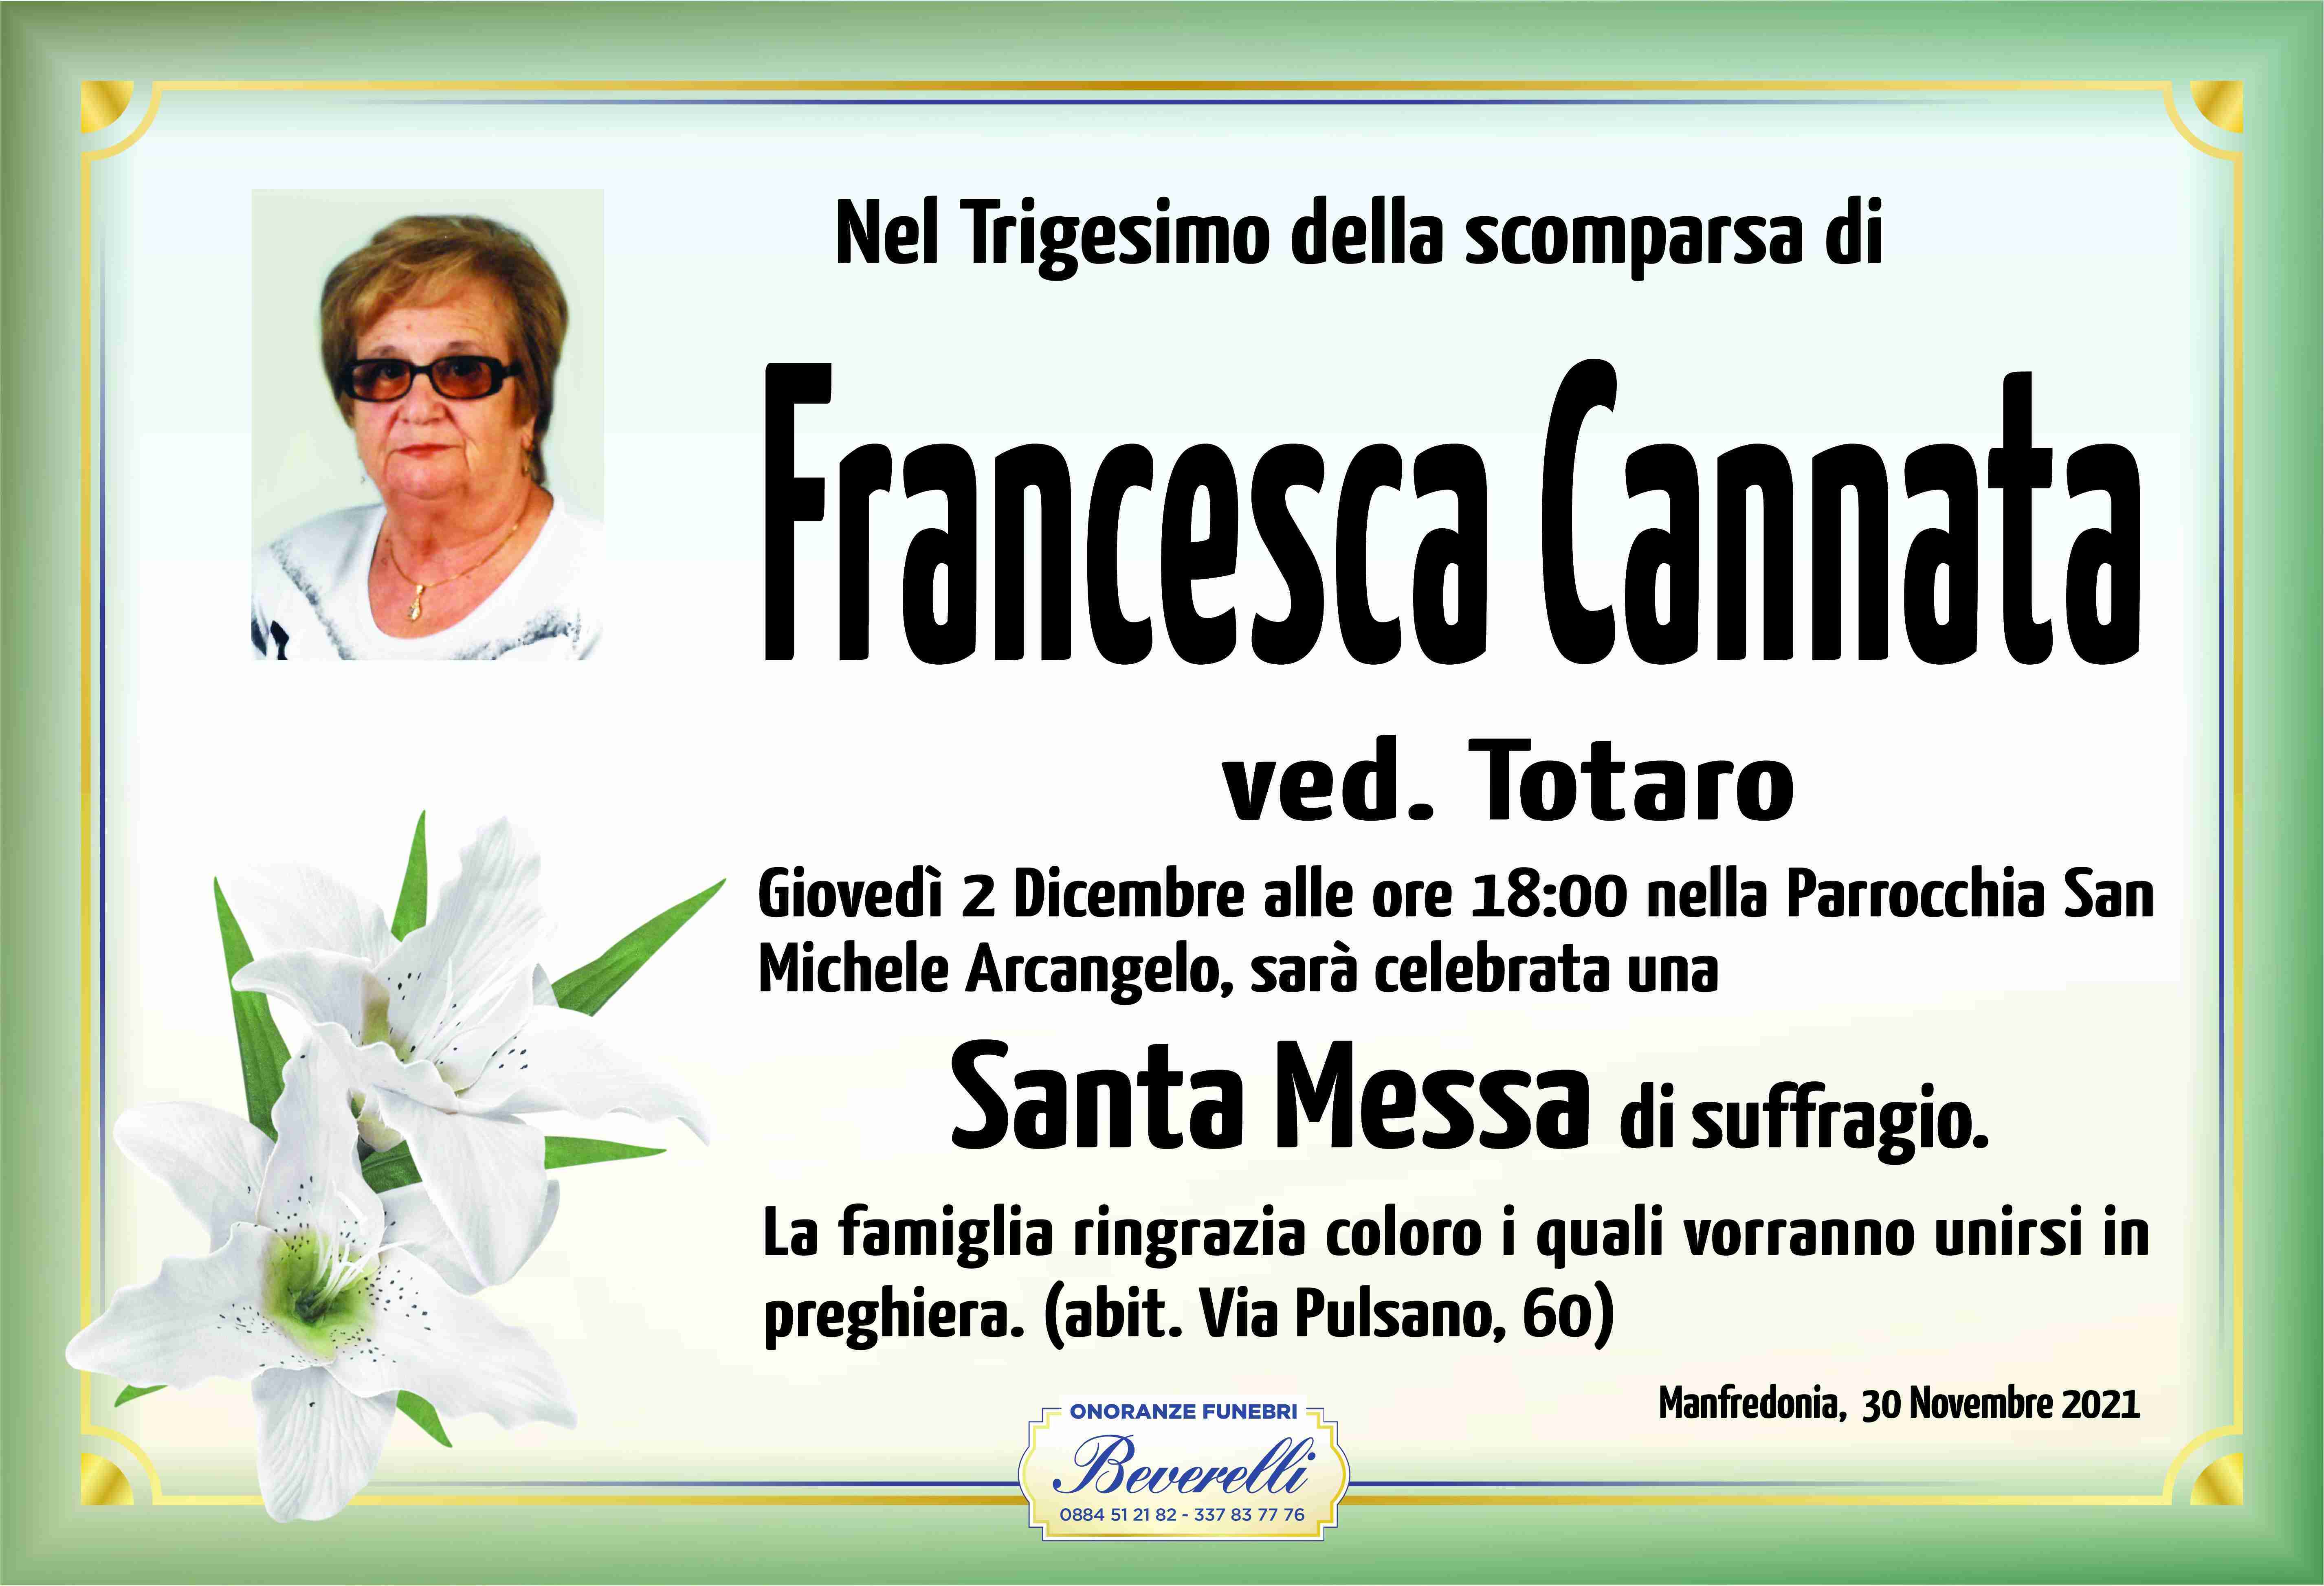 Francesca Cannata